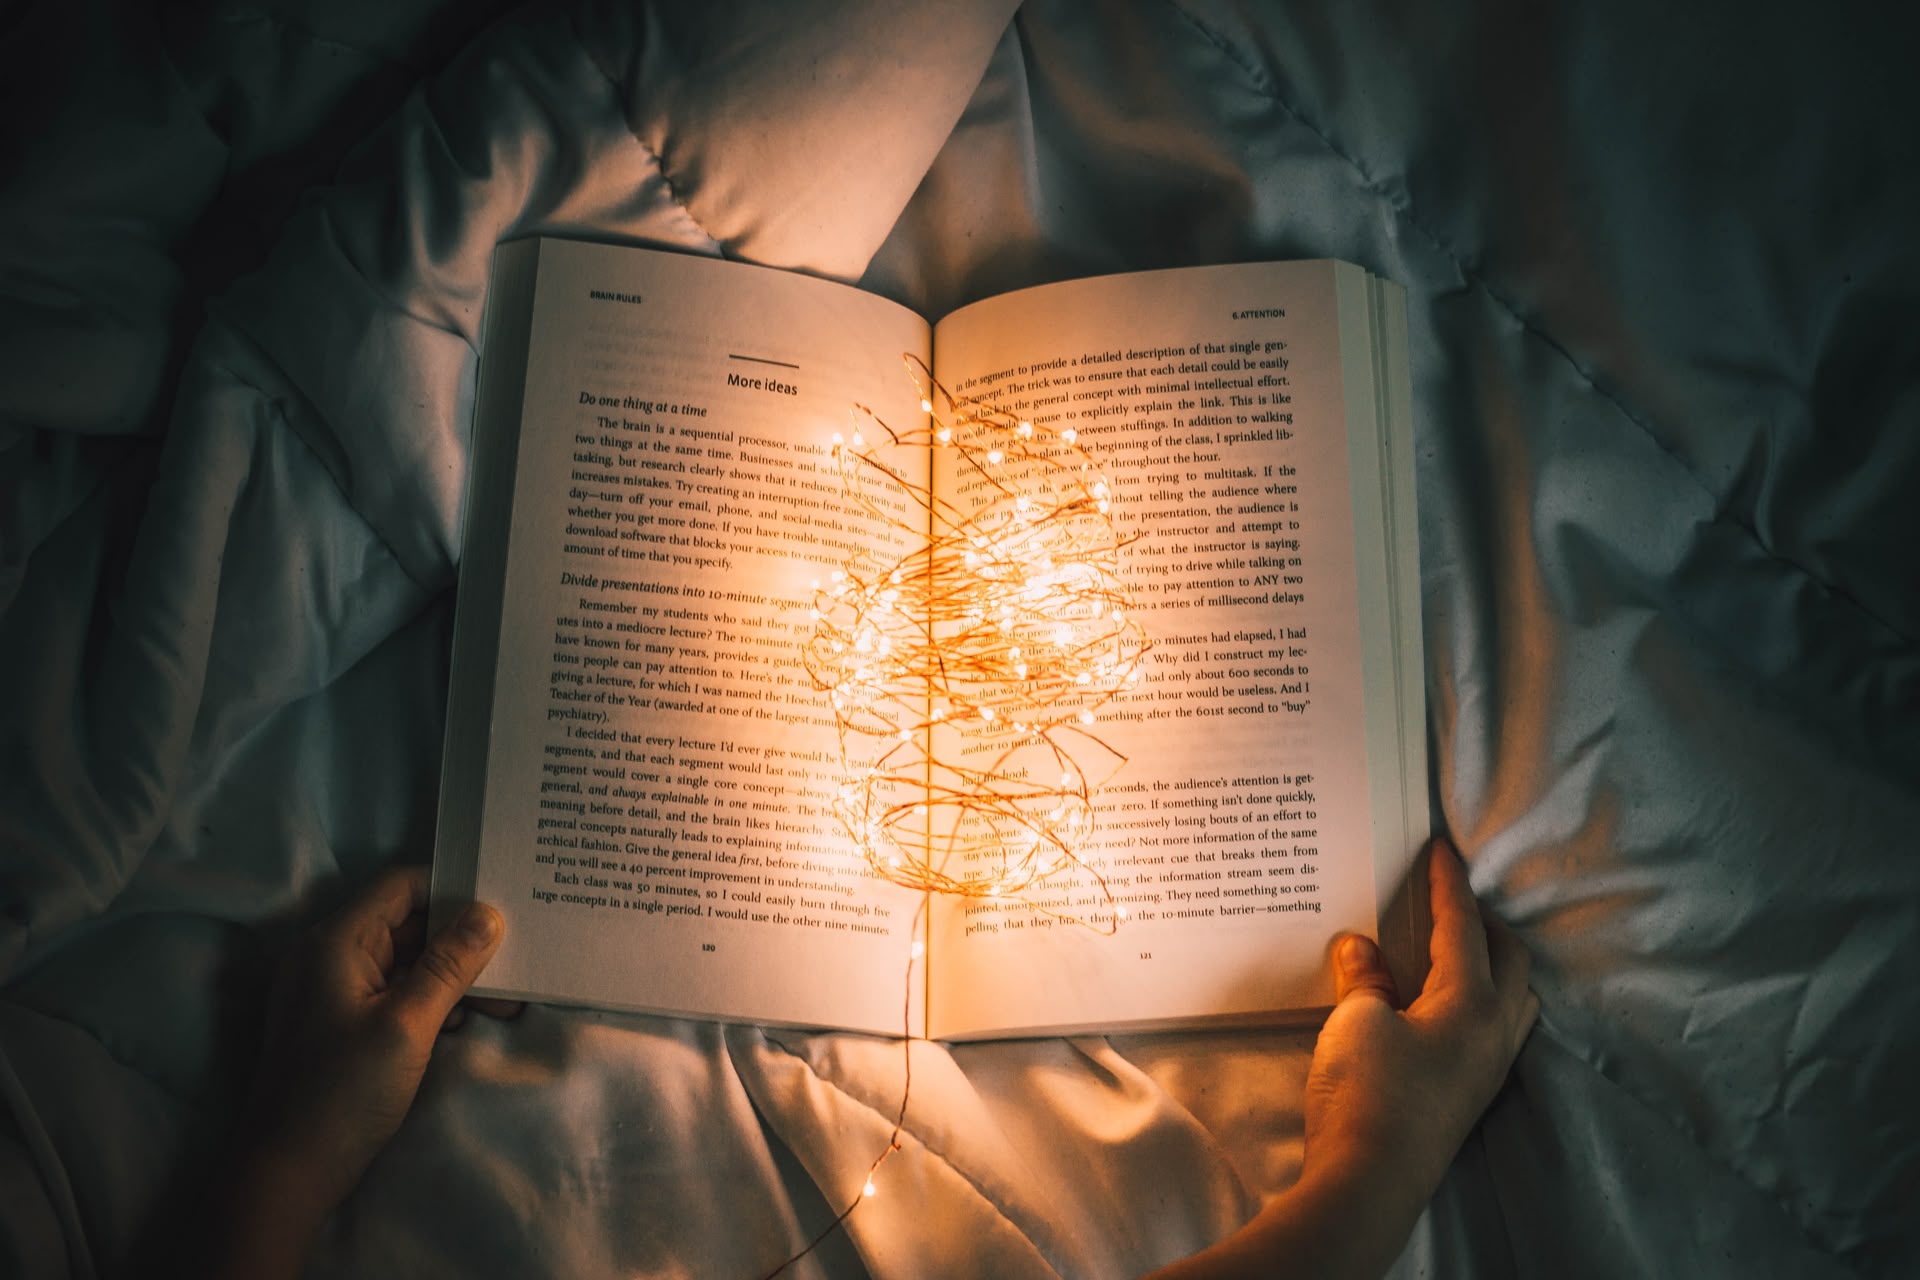 Blick von oben auf ein aufgeschlagenes Buch mit einer Lichterkette darin, das von 2 Händen festgehalten wird und auf einem Bett liegt